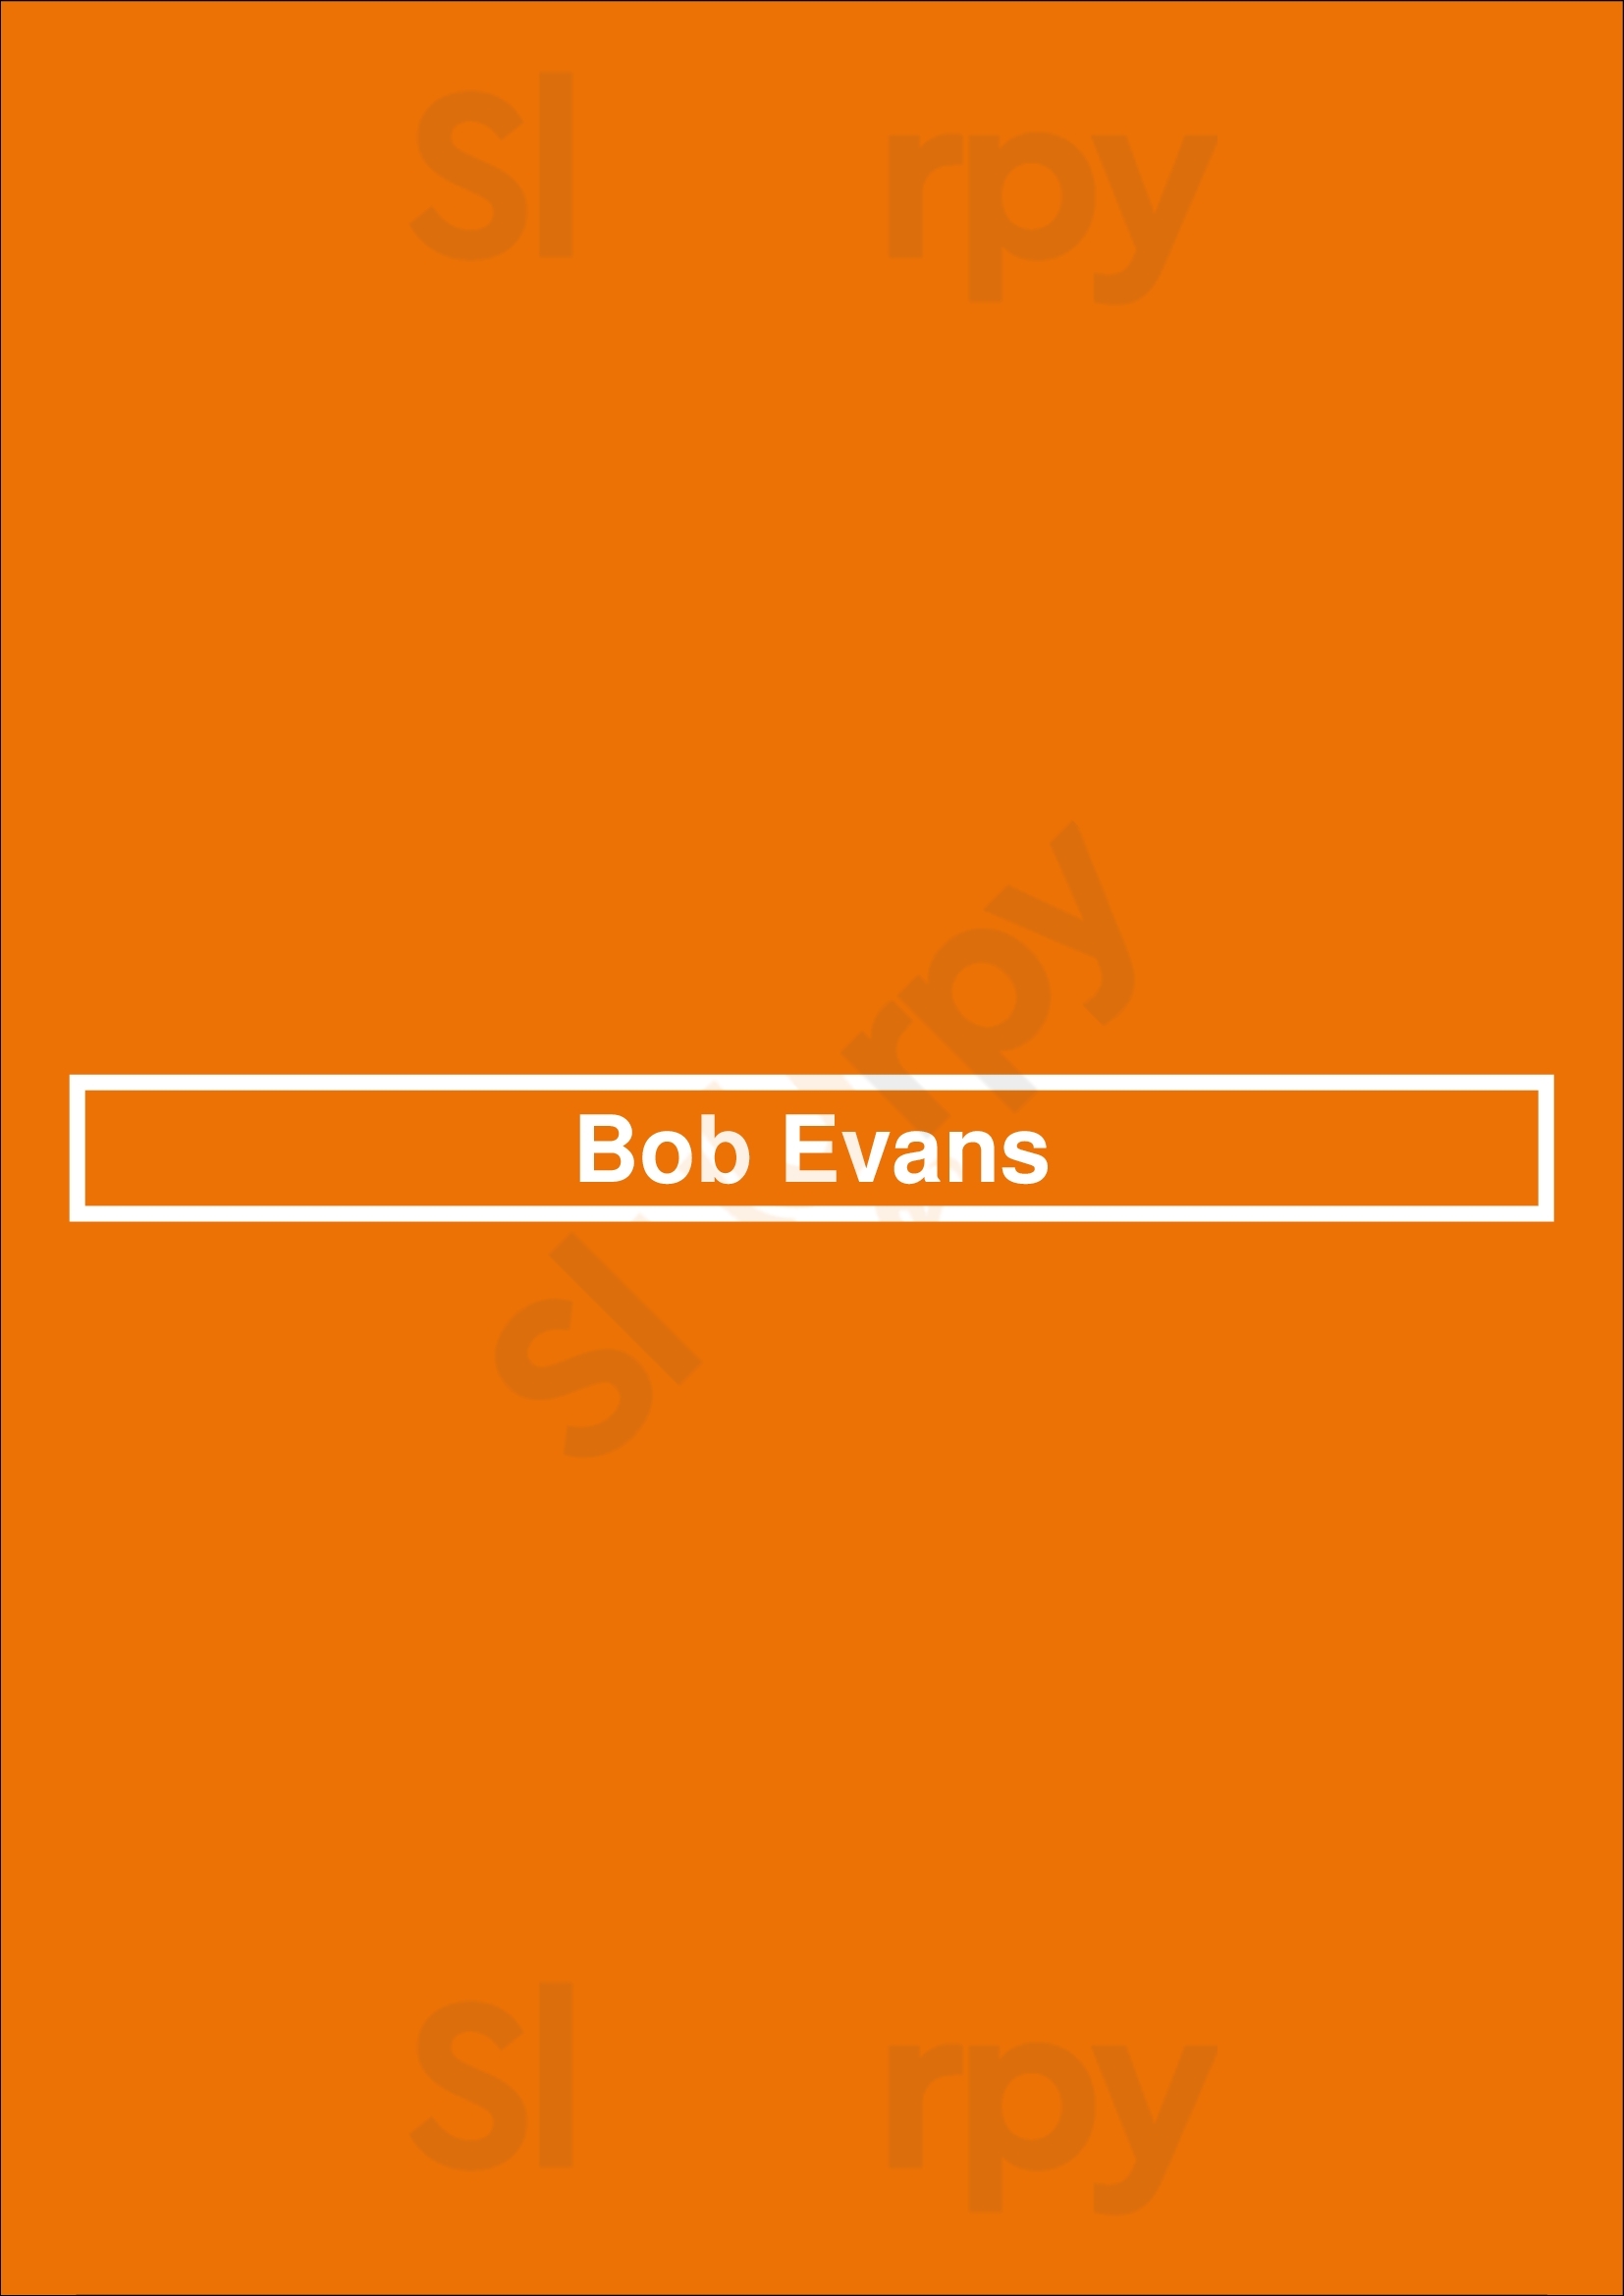 Bob Evans Coraopolis Menu - 1